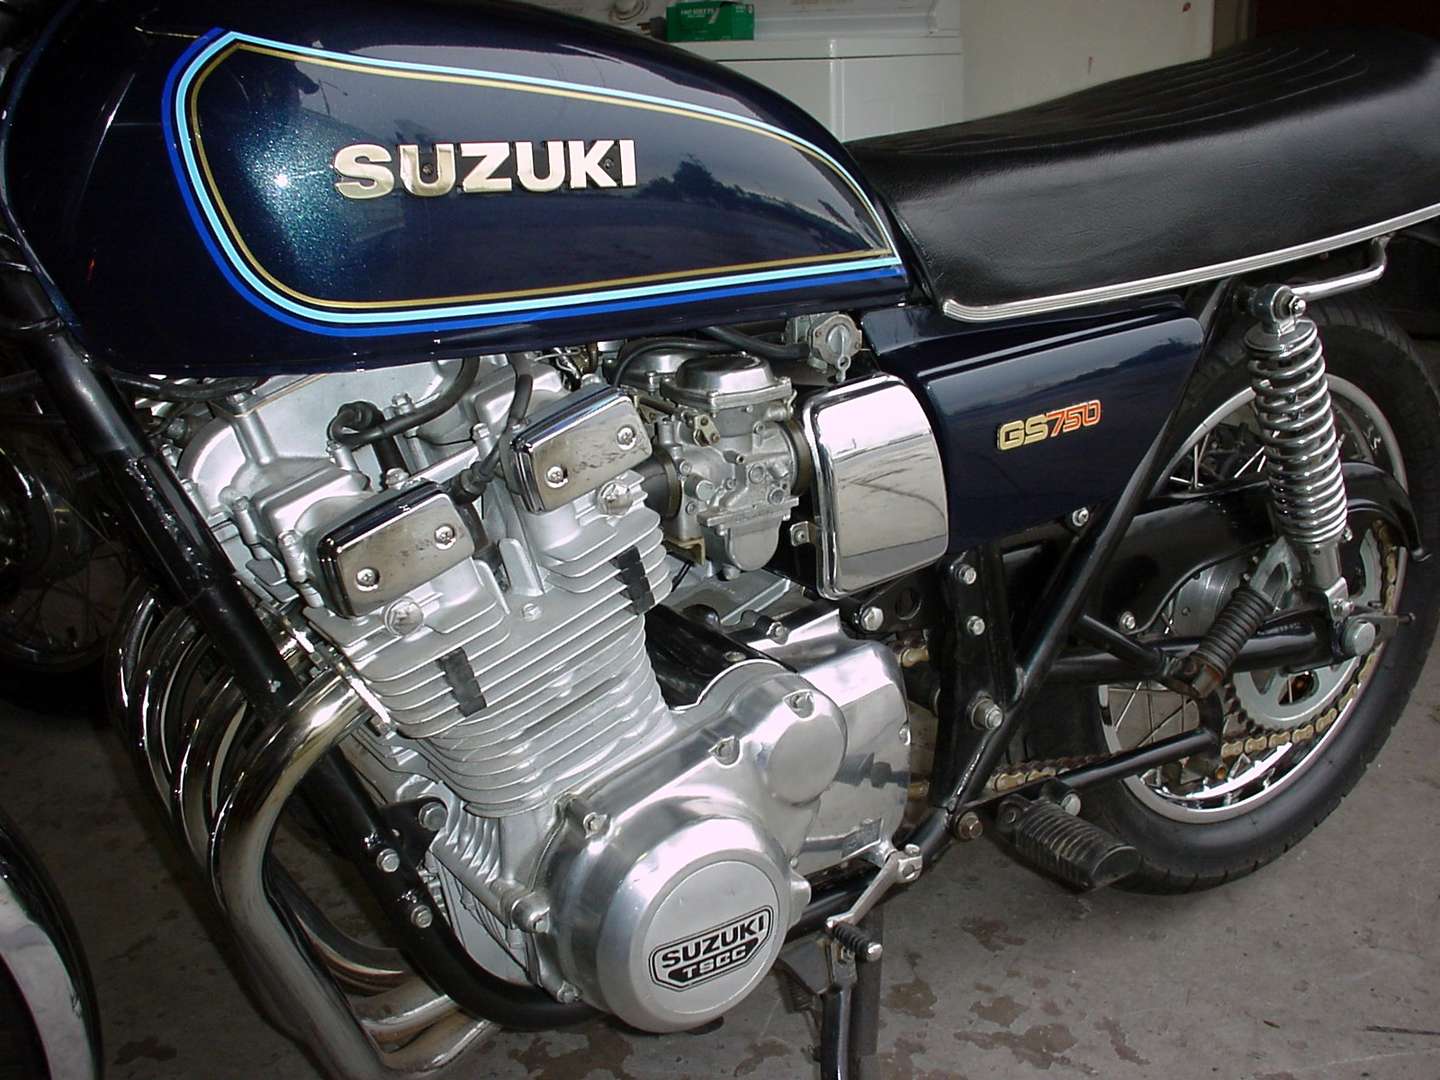 Suzuki_GS_750